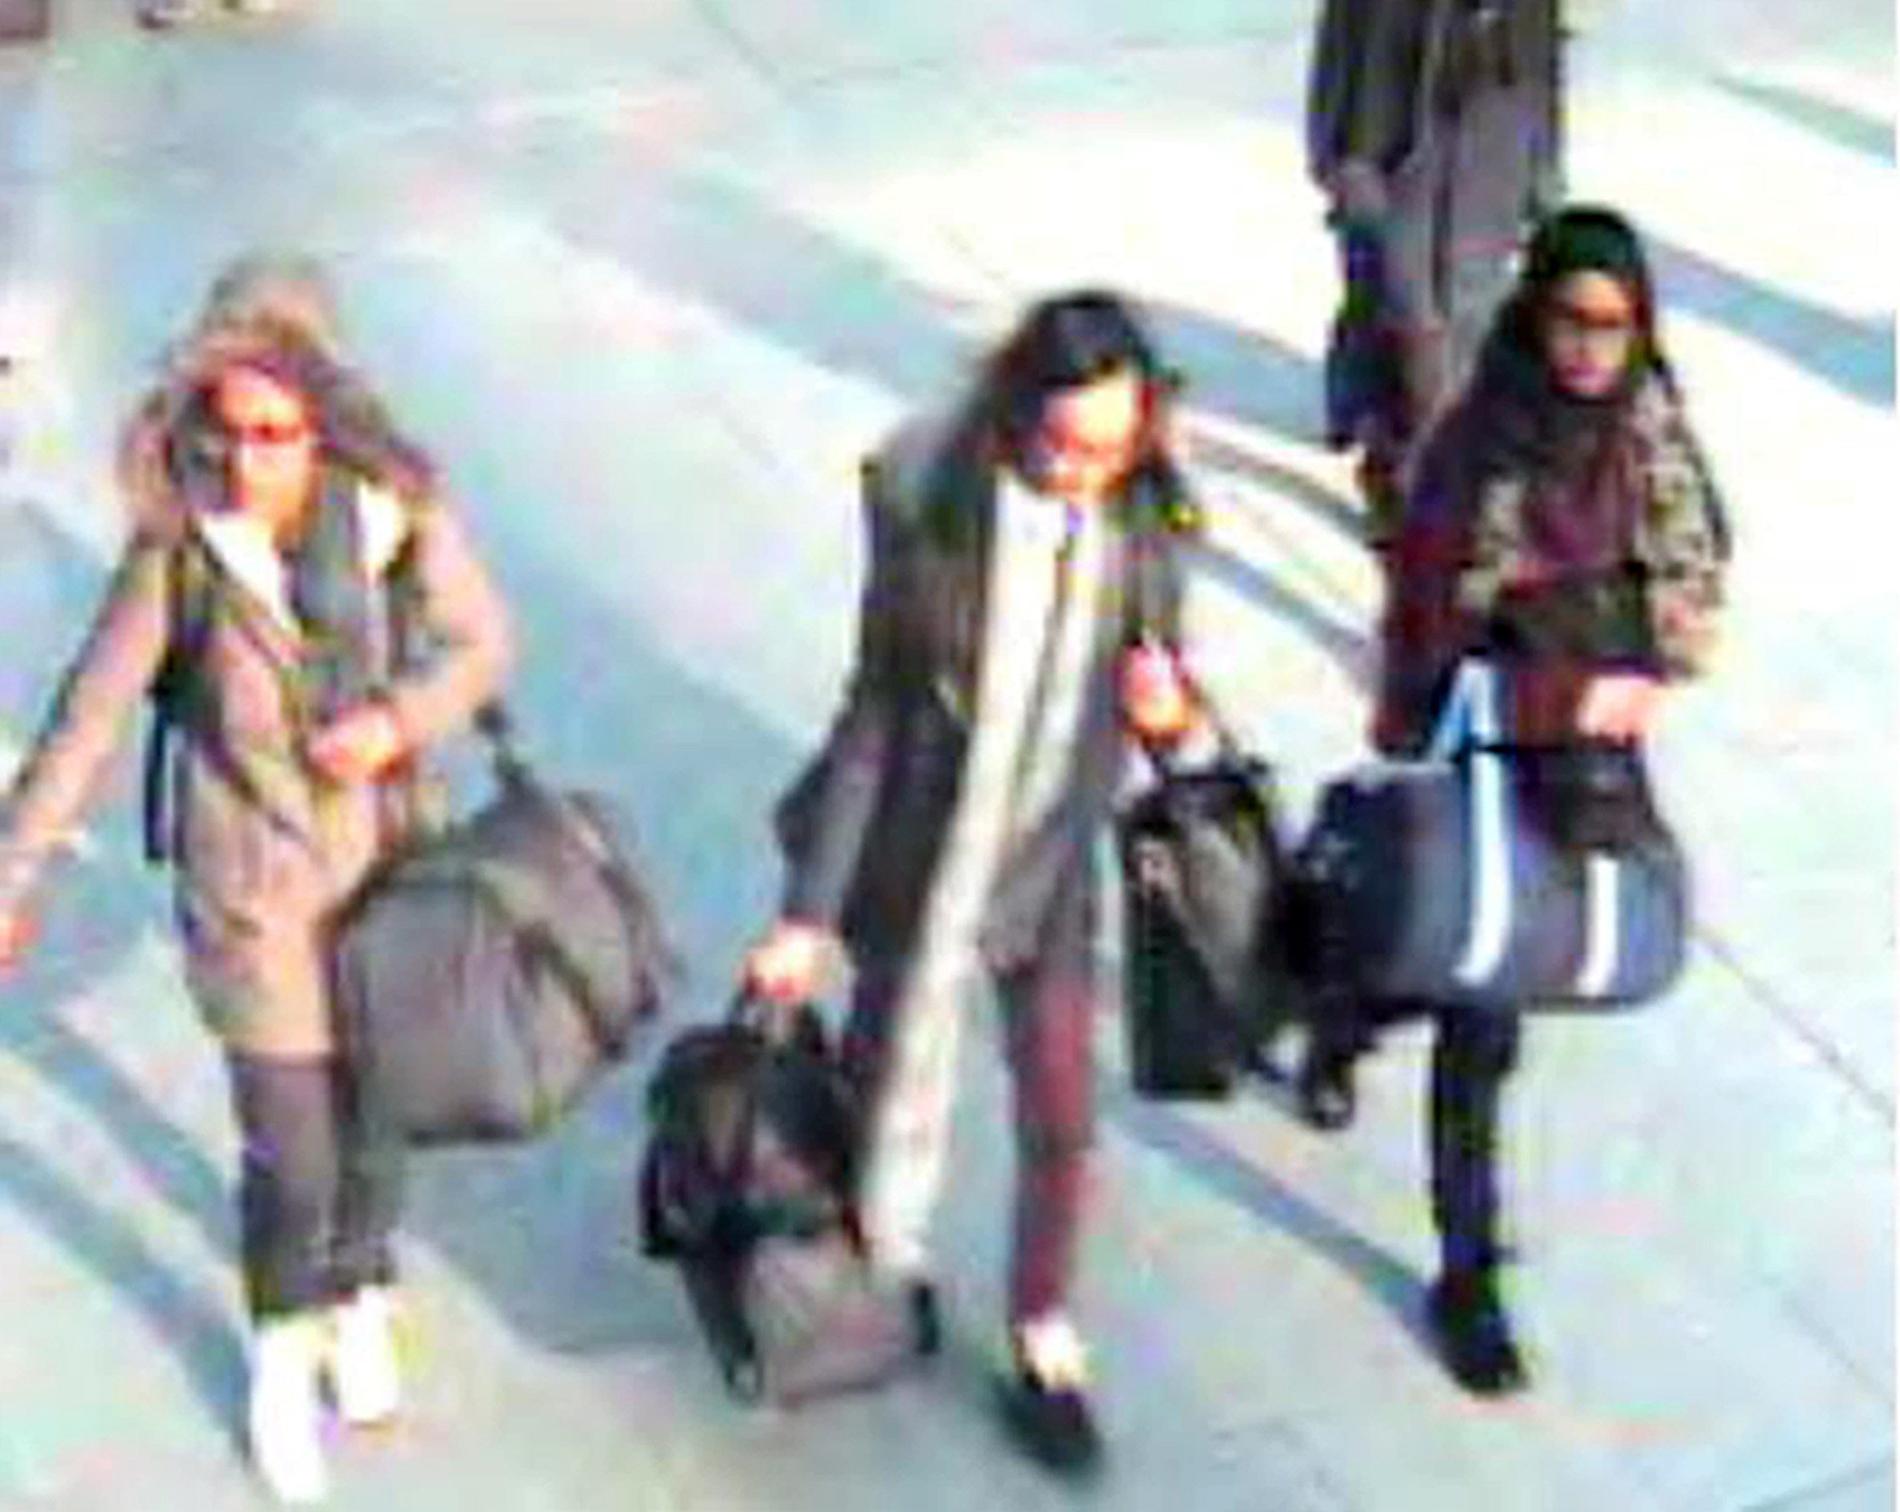 De tre tonåringarna fastnade på bild på Gatwicks flygplats i februari 2015 på väg för att ansluta sig till IS i Syrien. Arkivbild.